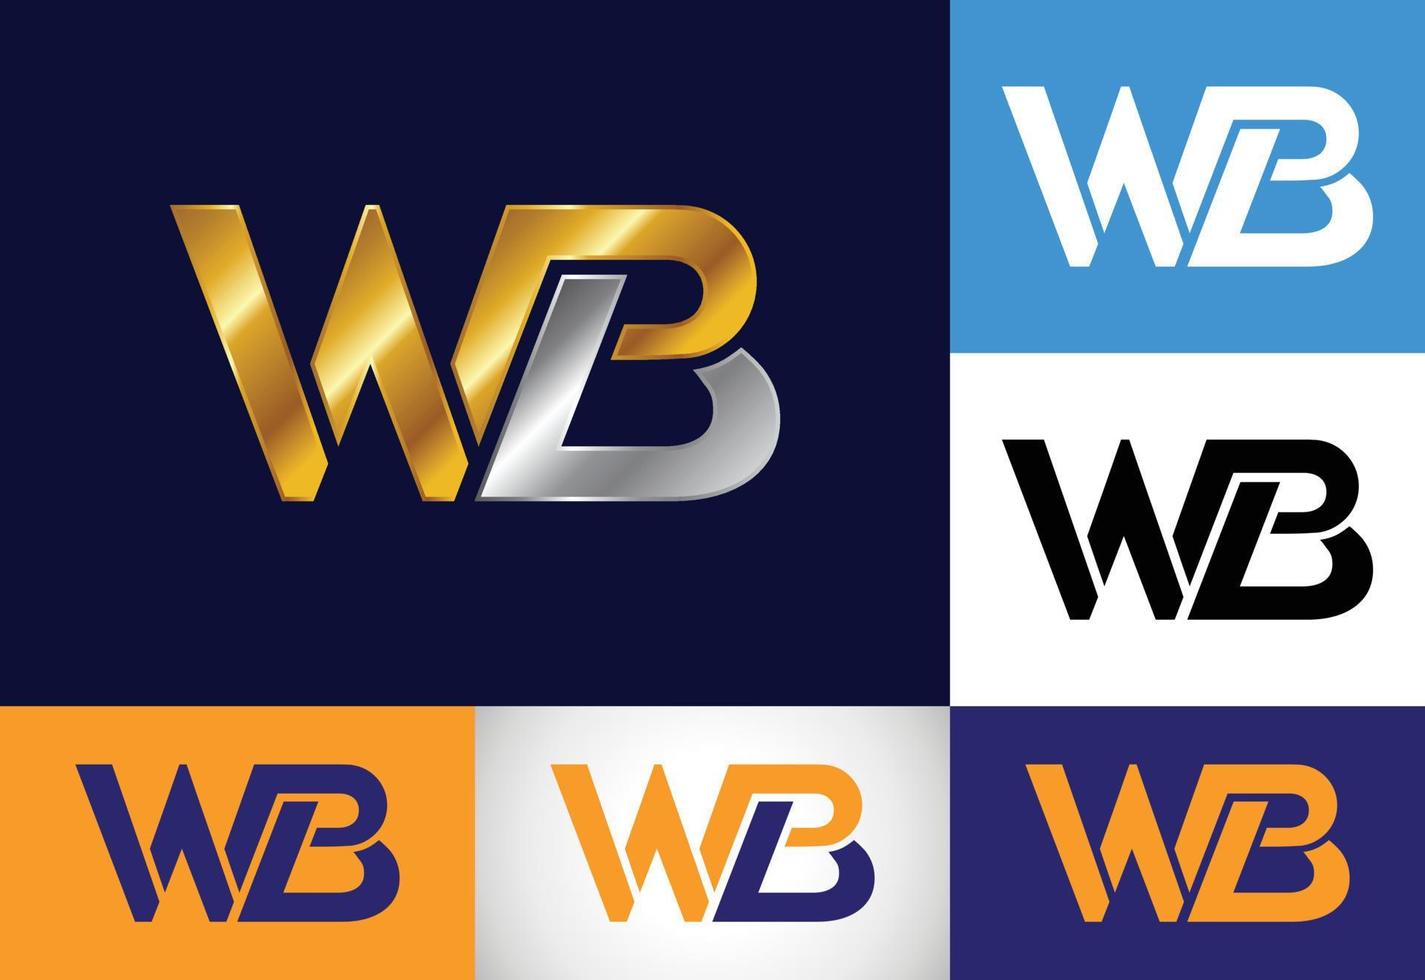 anfängliches monogrammbuchstabe wb logo design. grafisches alphabetsymbol für unternehmensidentität vektor